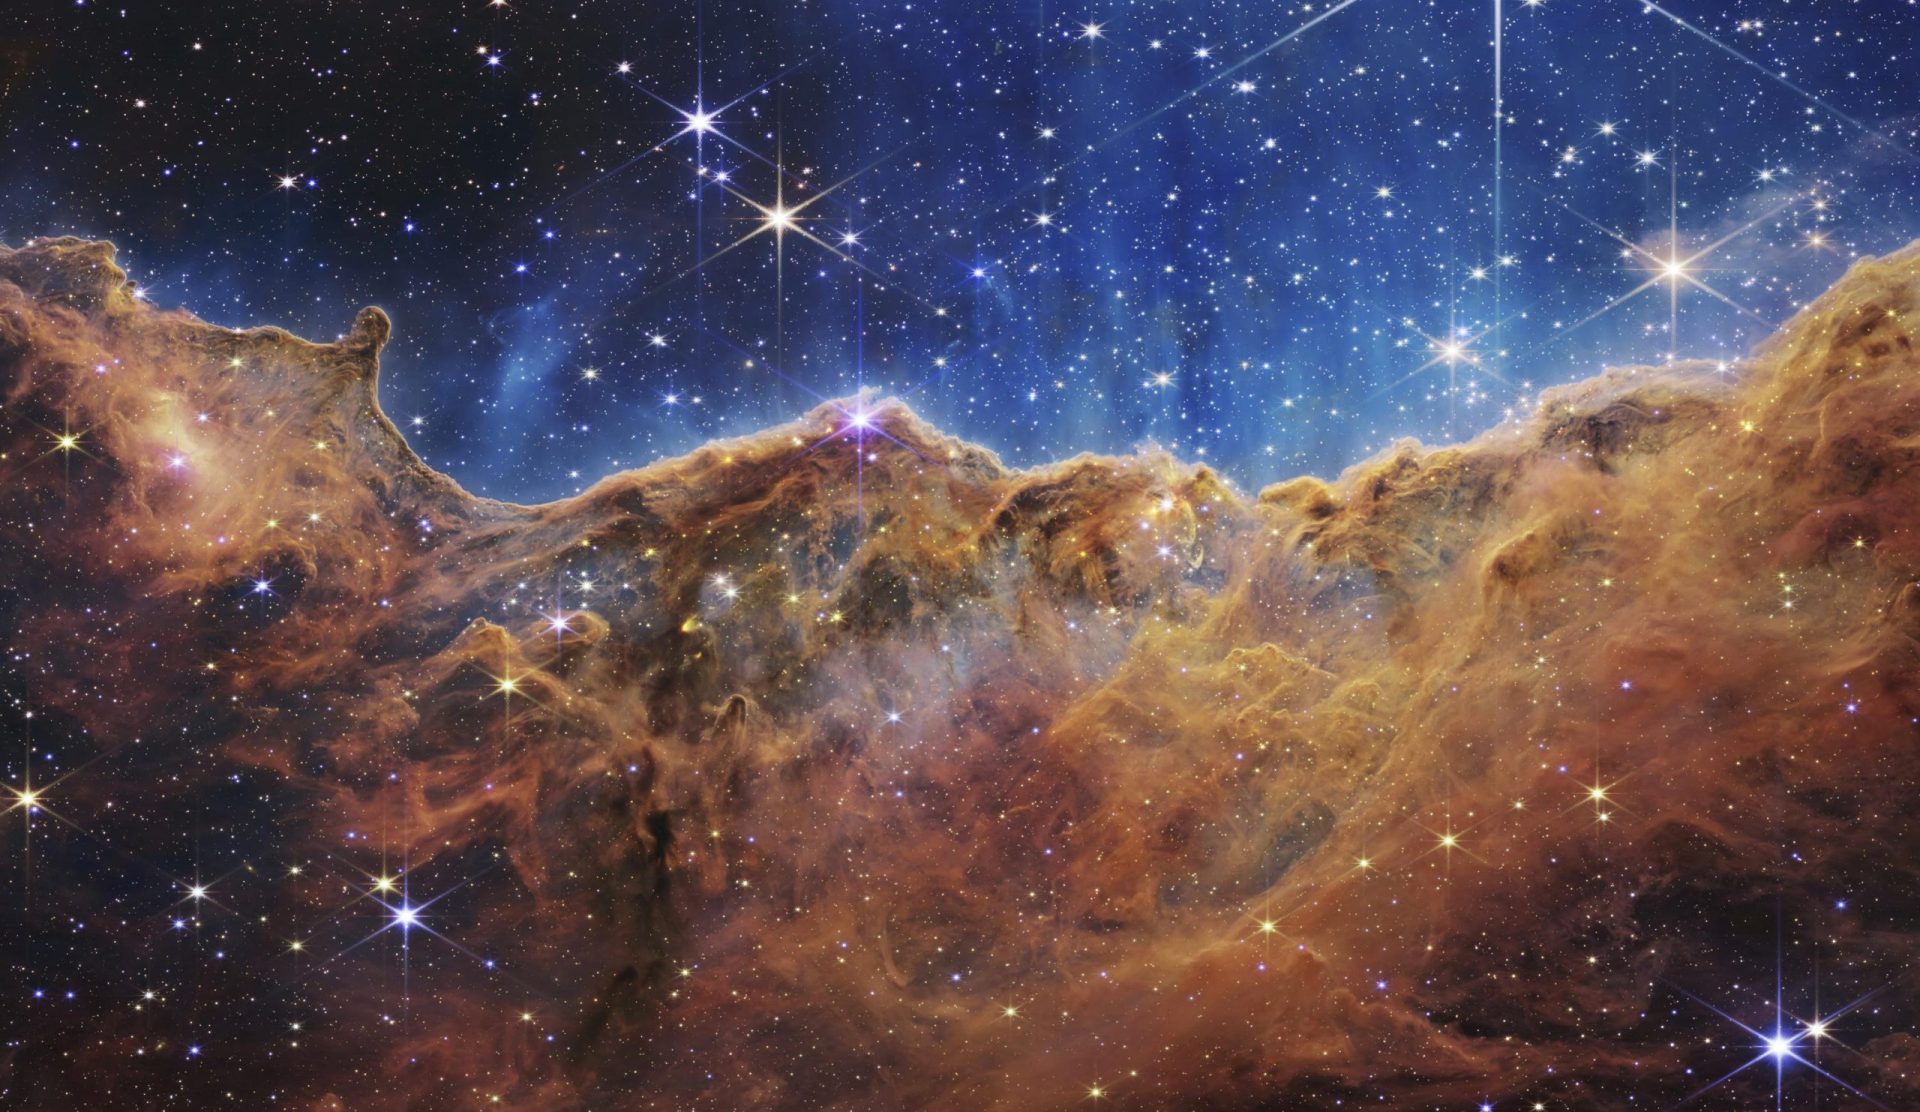 Estrellas bebés, galaxias danzantes: la NASA muestra nuevas vistas cósmicas